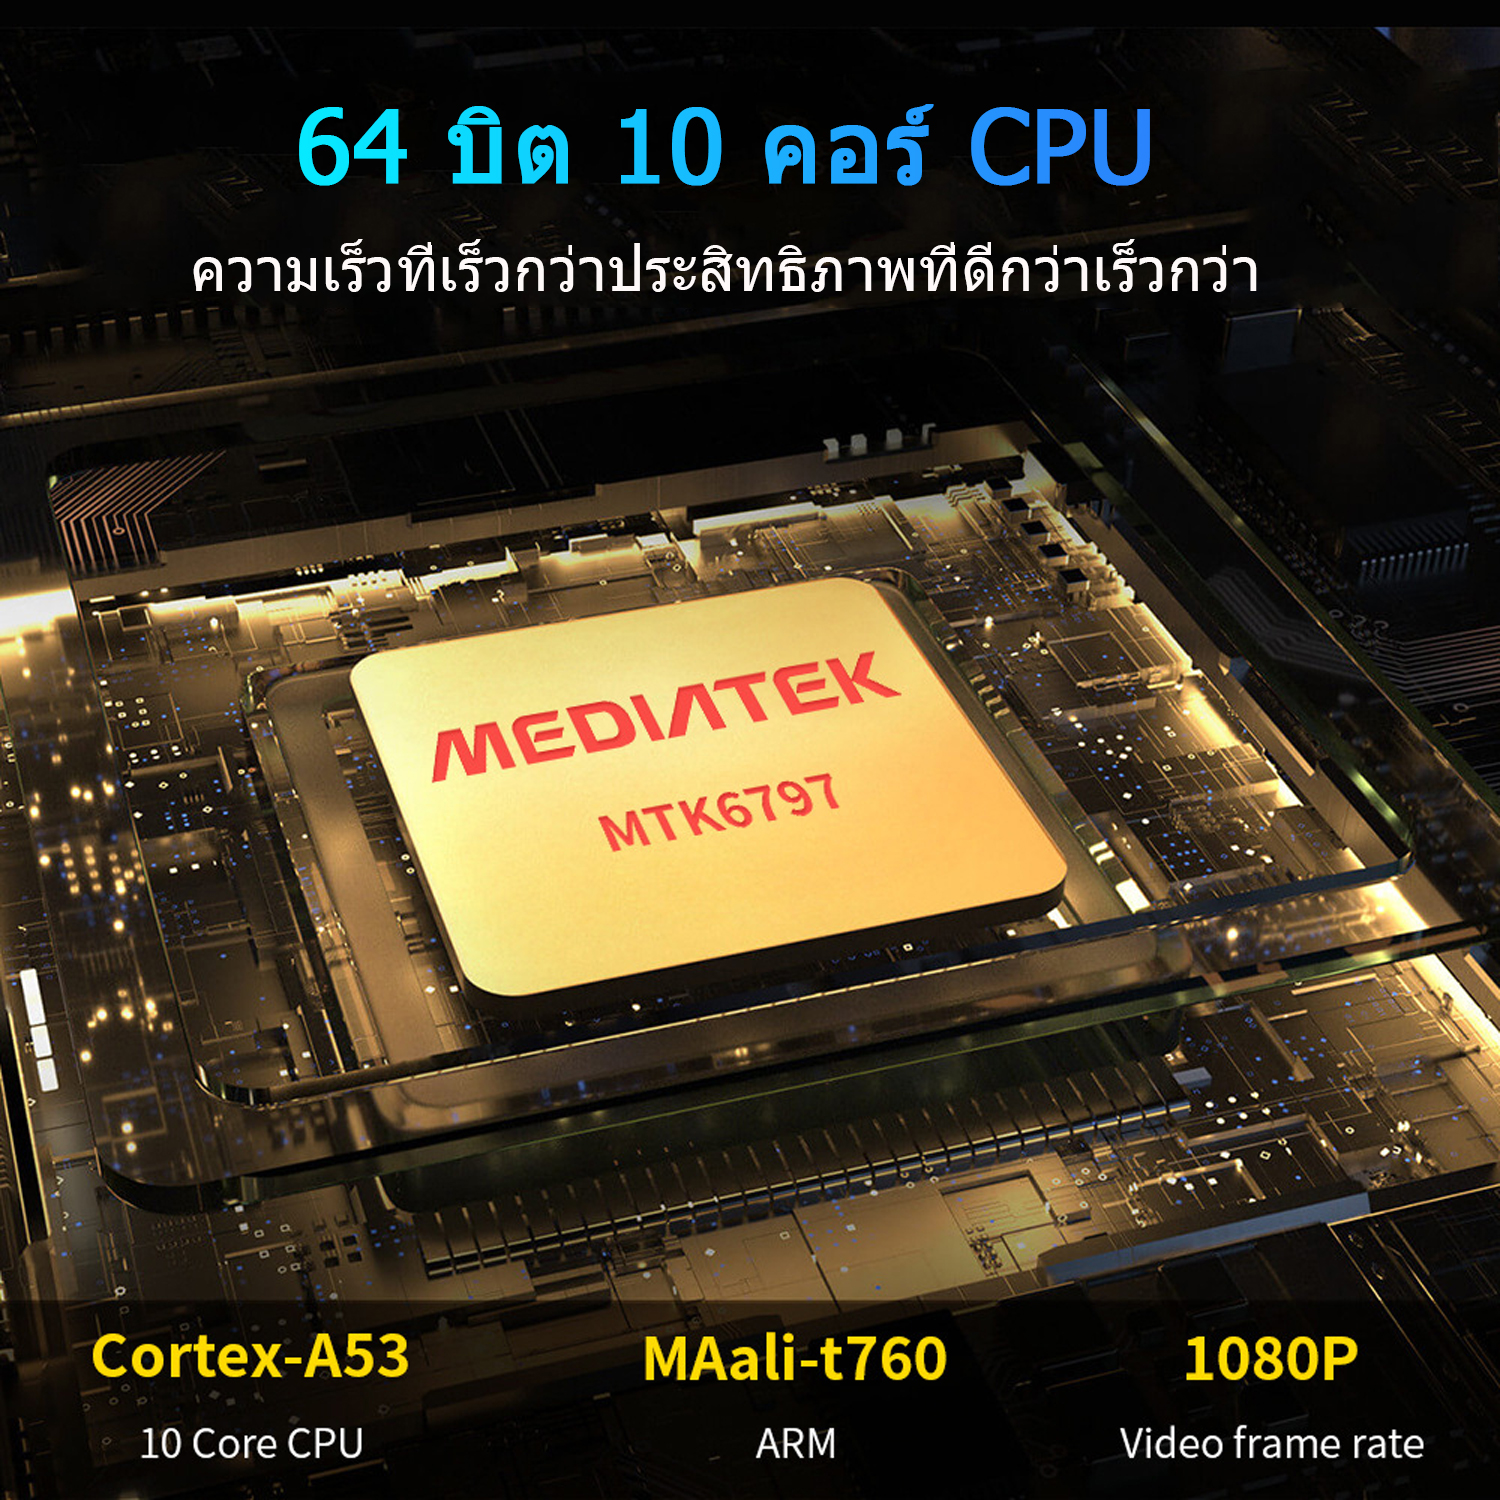 ภาพประกอบคำอธิบาย （ลดเคลียร์สต๊อก）Realmi Thailand Store❗ แท็บเล็ตขนาดหน้าจอ10.1 นิ้ว (8GB+128GB) แท็บเล็ตถูกๆ1000 แทบเล็ตของแท้ 2021tablet pc แท็บเล็ตระบบ Android9.0 แท็บเล็ตถูกๆ2021 มีการรับประกันจากผู้ขาย อัพเกรดชิป ลำโพงคู่ ที่มีความละเอียดถึง รับประกัน1ปี❗ส่งจากไทย